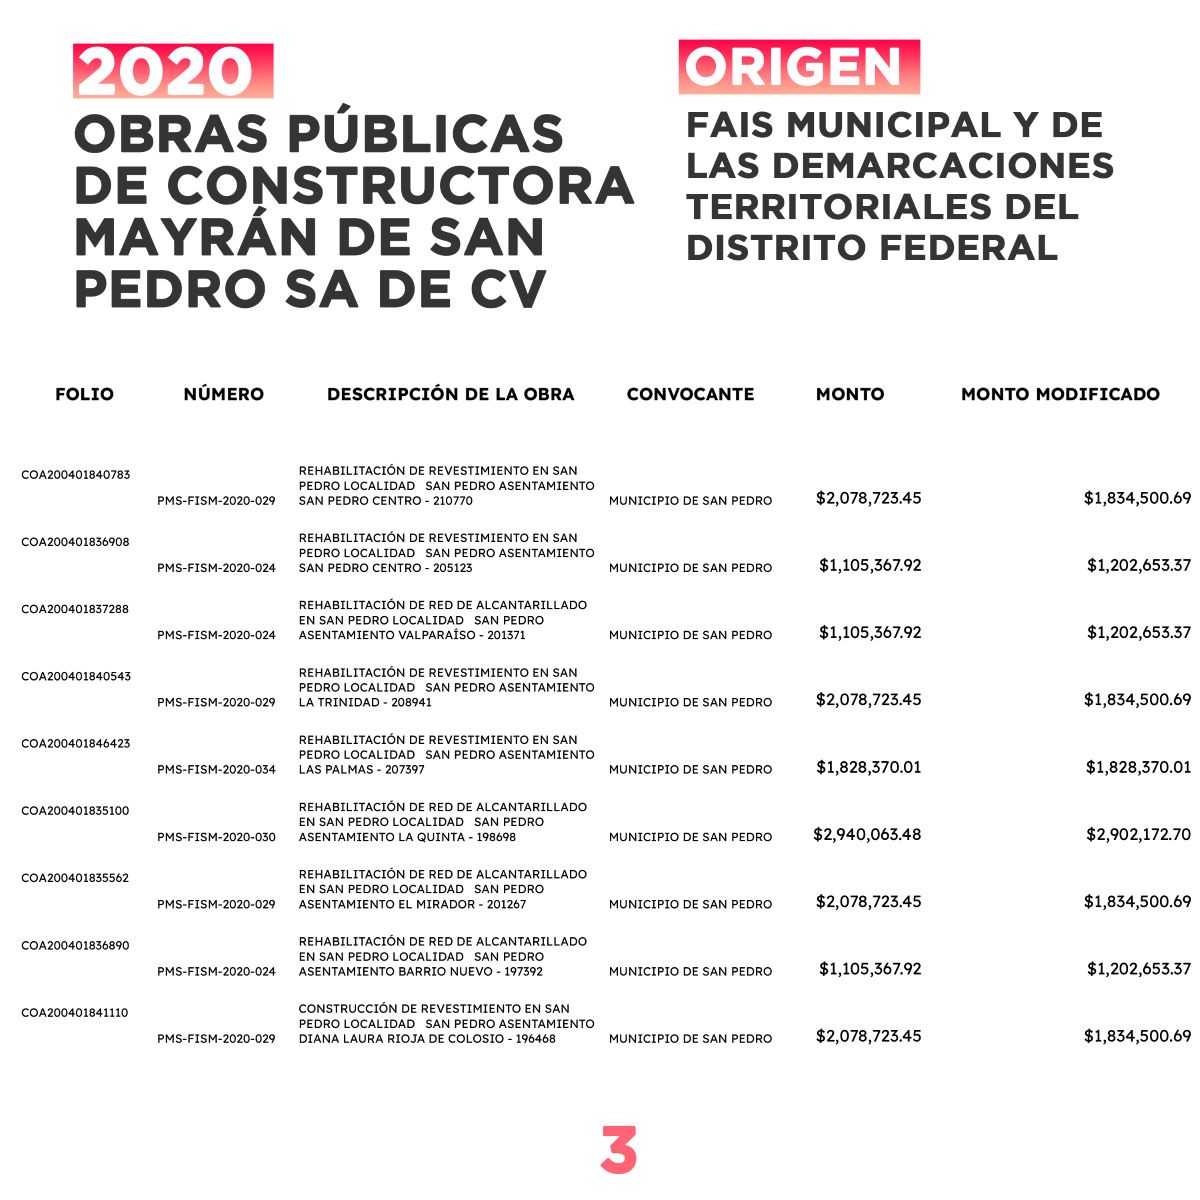 Contratos de Constructora Mayrán de San Pedro provenientes del Fondo de Aportaciones para la Infraestructura Social 2020. FUENTE: Secretaría de Finanzas de Coahuila.